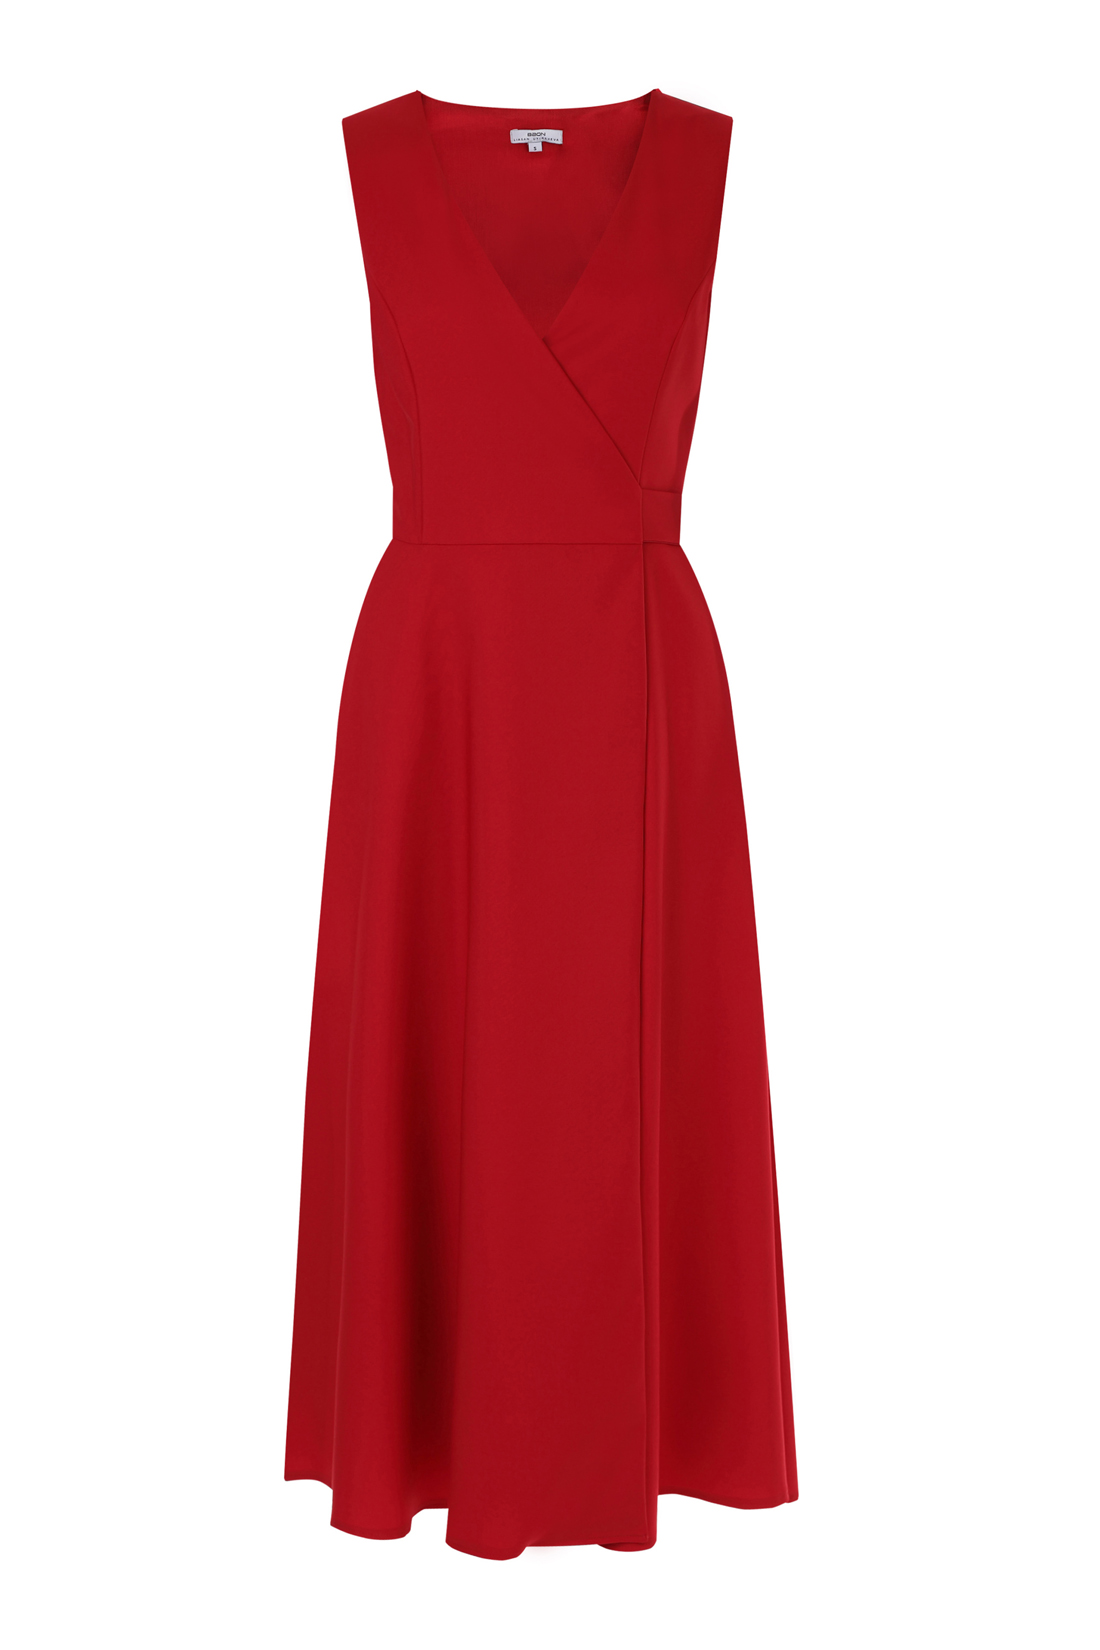 Платье без рукавов (арт. baon B458135), размер XS, цвет красный Платье без рукавов (арт. baon B458135) - фото 2